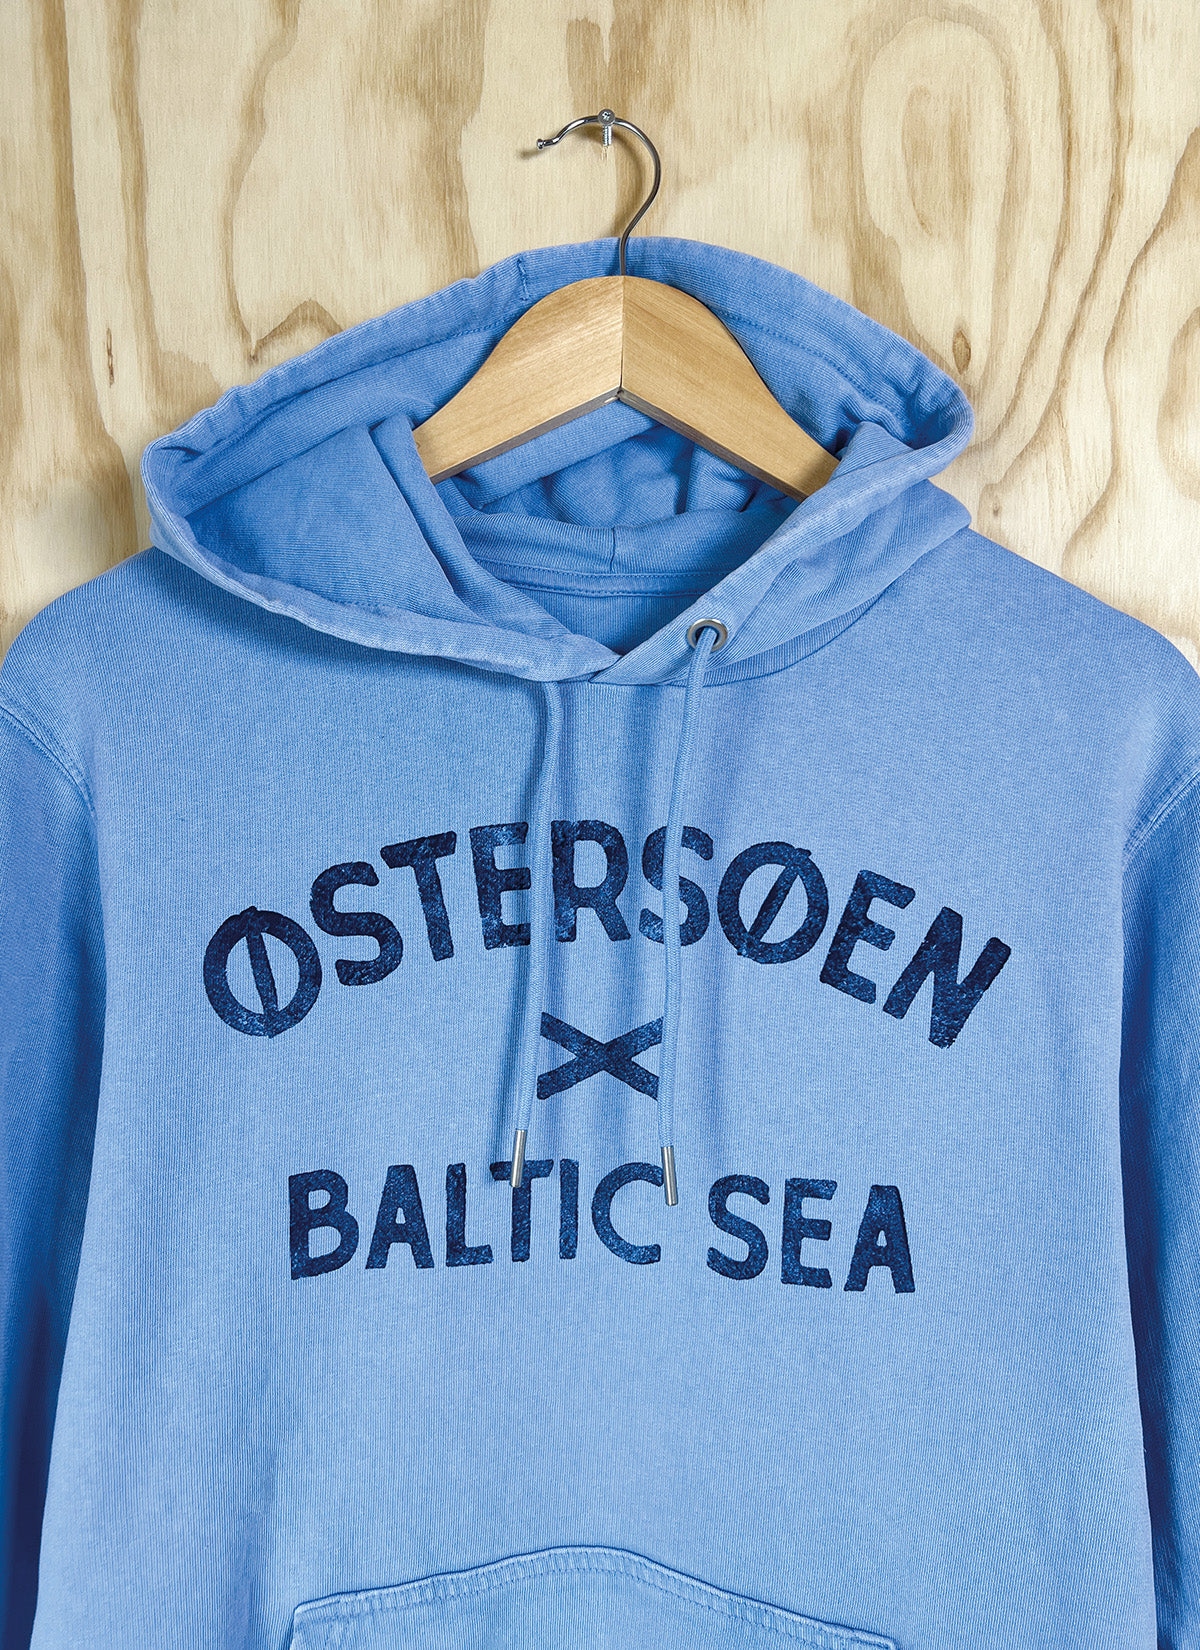 Hoodie "Østersøen - Baltic Sea"